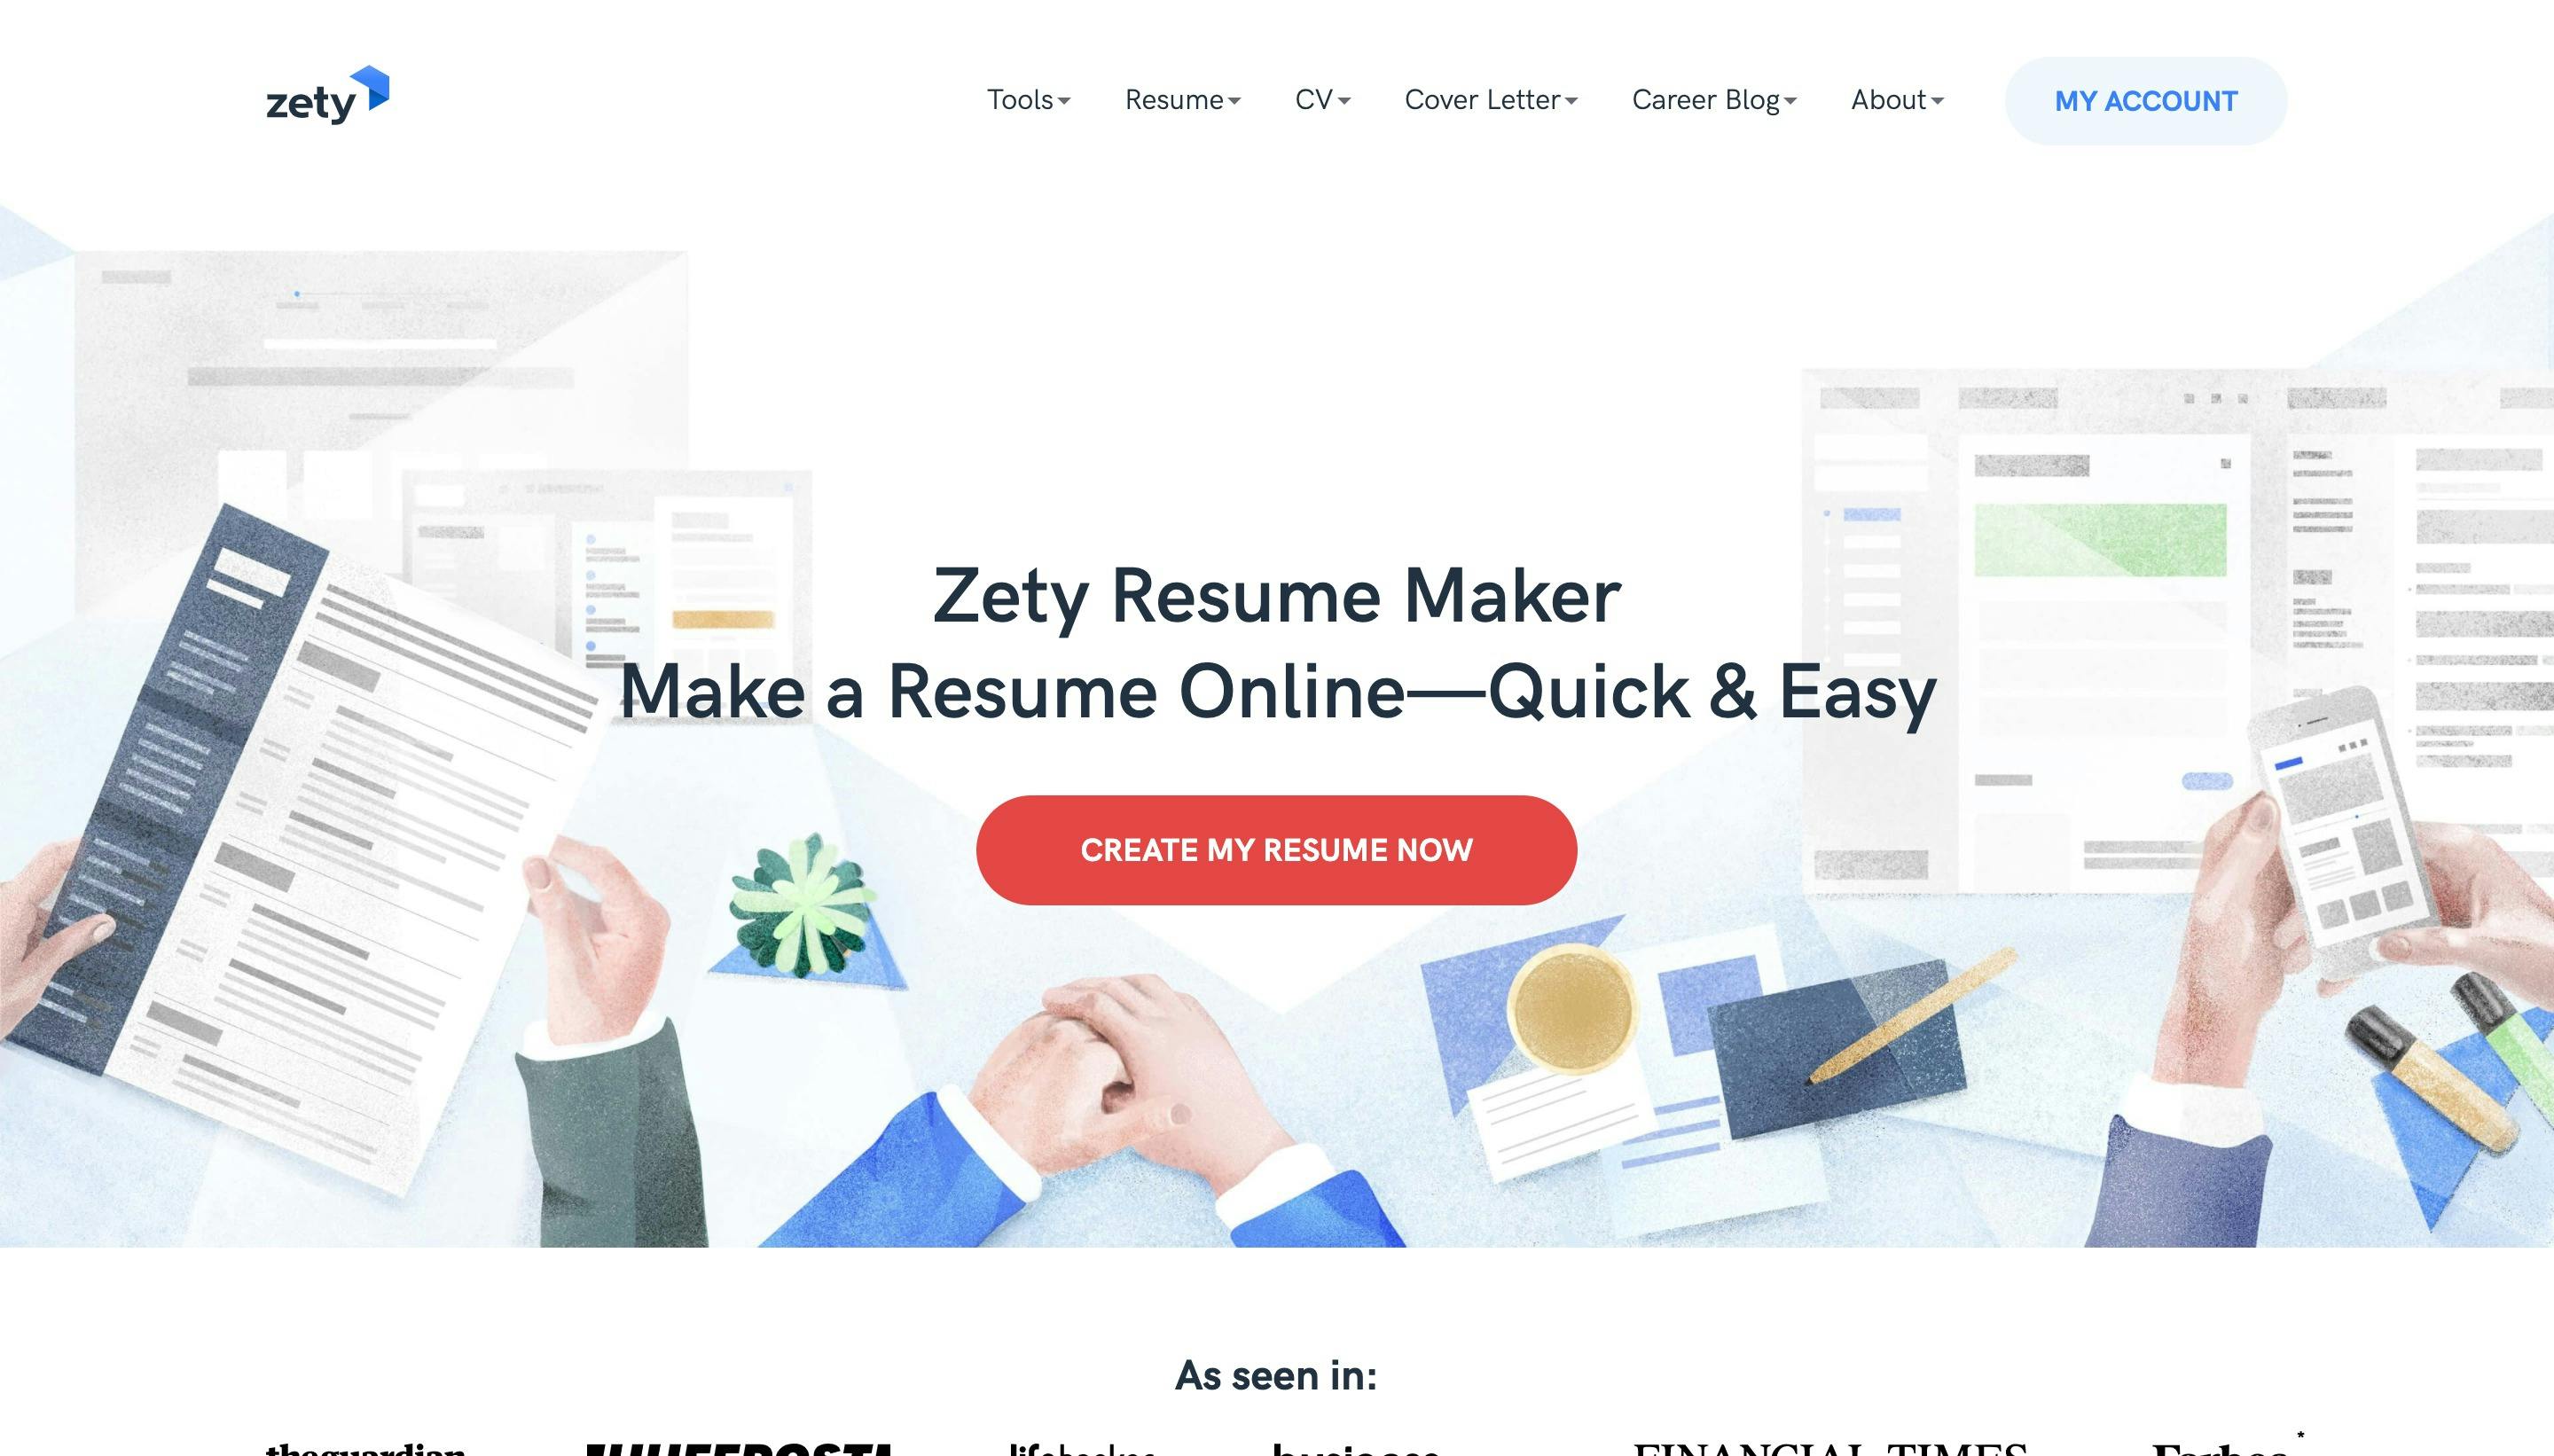 Zety Resume Maker